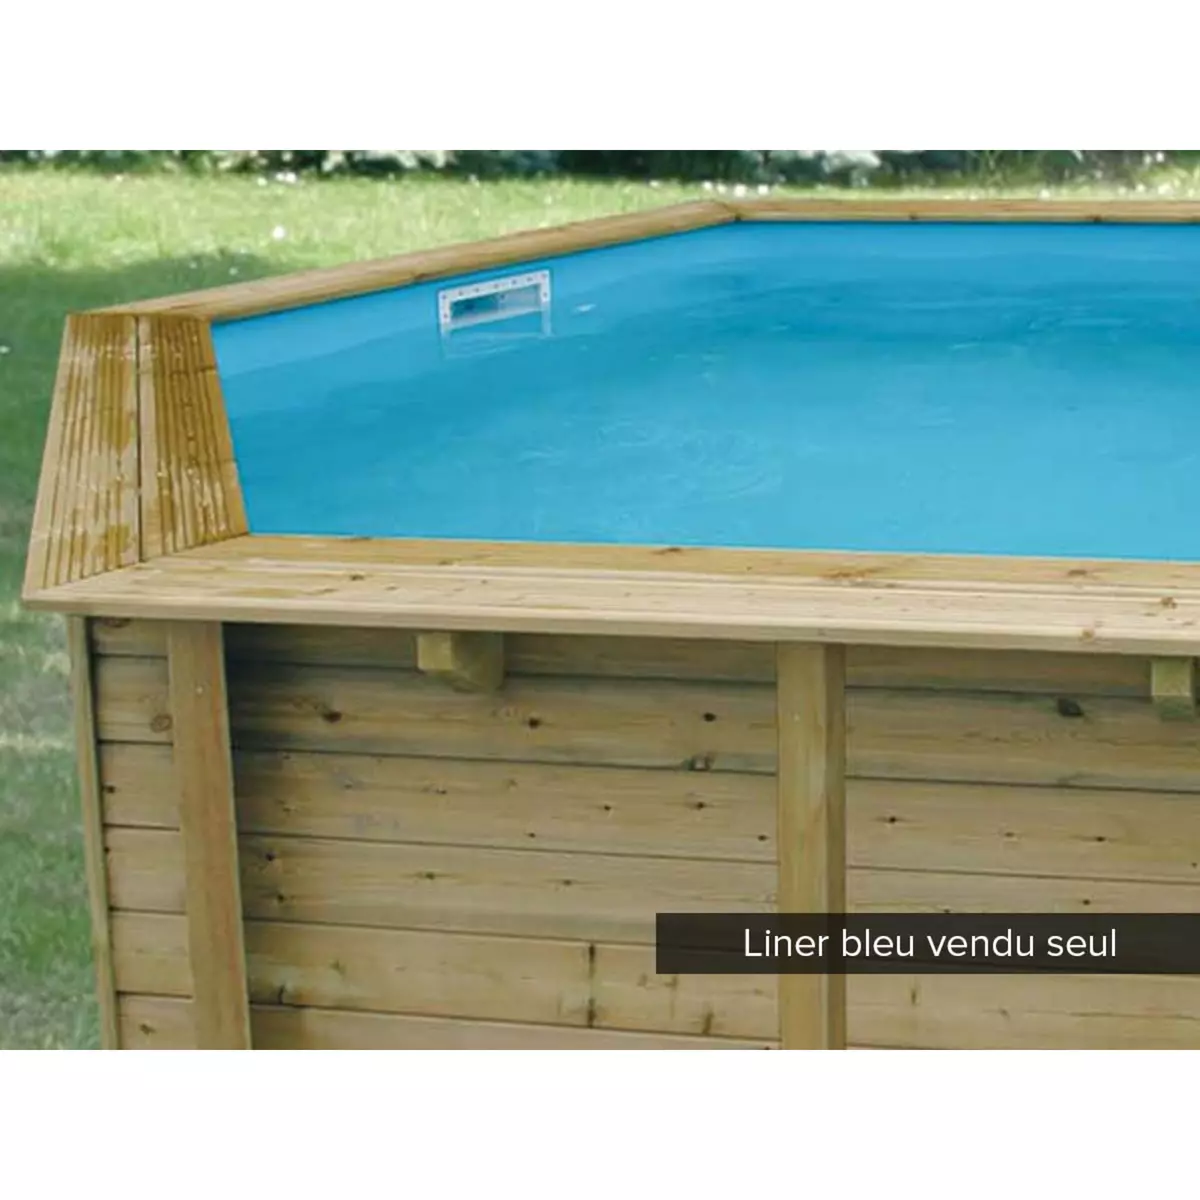 Ubbink Liner seul Bleu pour piscine bois Azura Ø 4,10 x 1,20 m - Ubbink